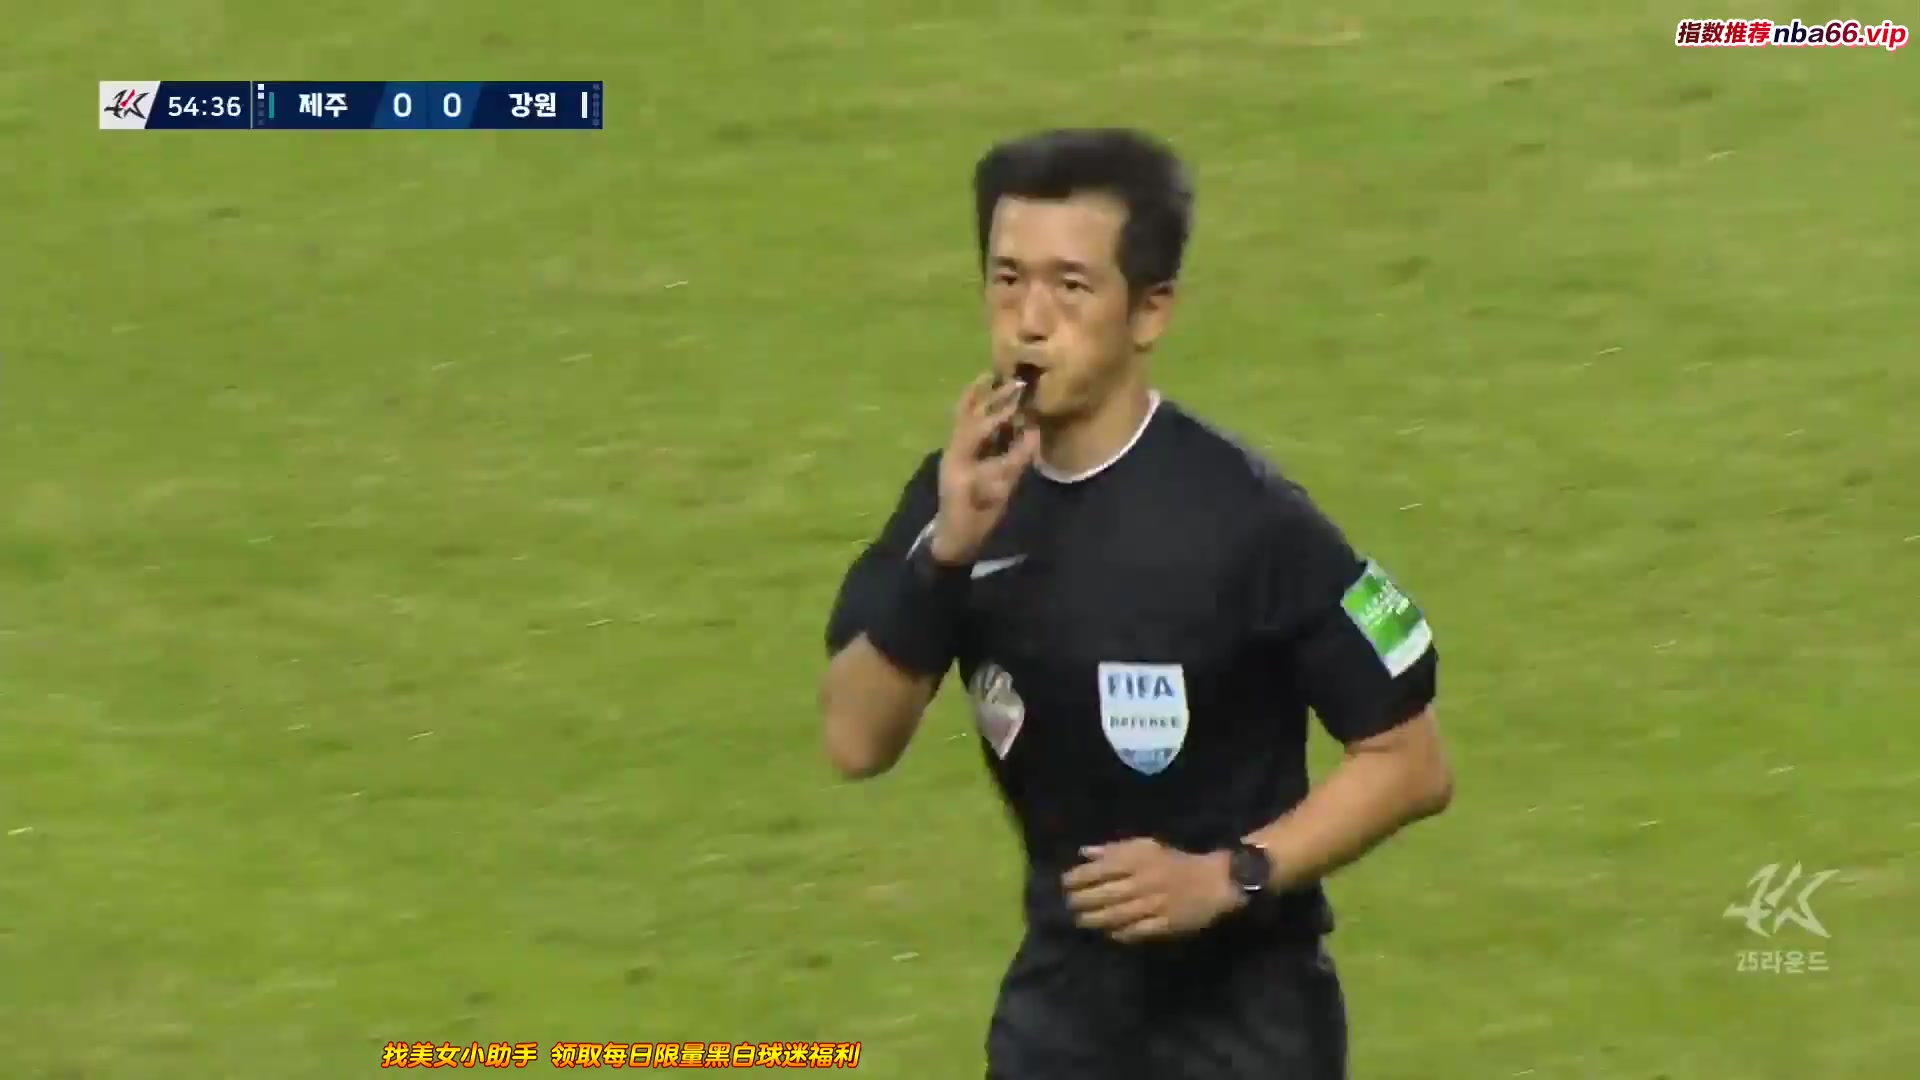 KOR D1 Jeju United Vs Gangwon FC  Goal in 55 min, Score 0:1